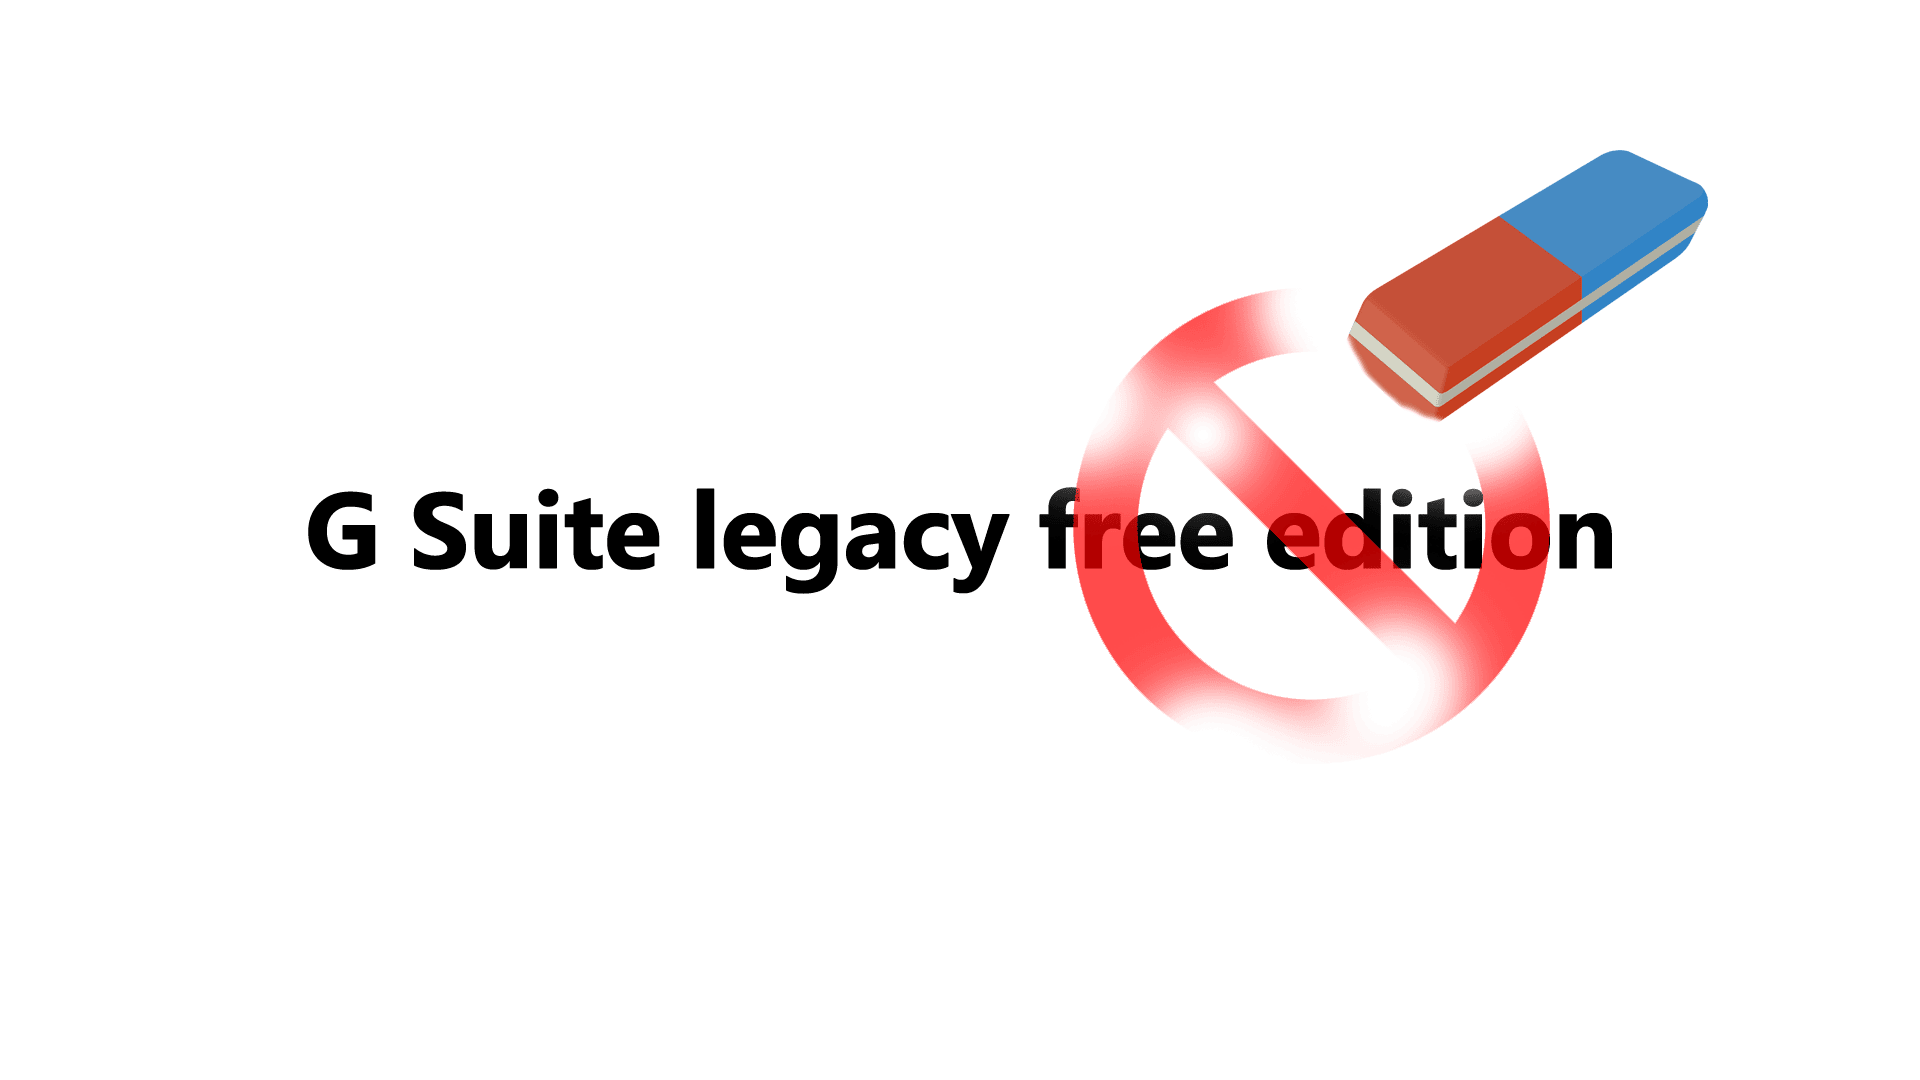 G Suite (legacy) pozostanie jednak darmowy (dla użytku osobistego)